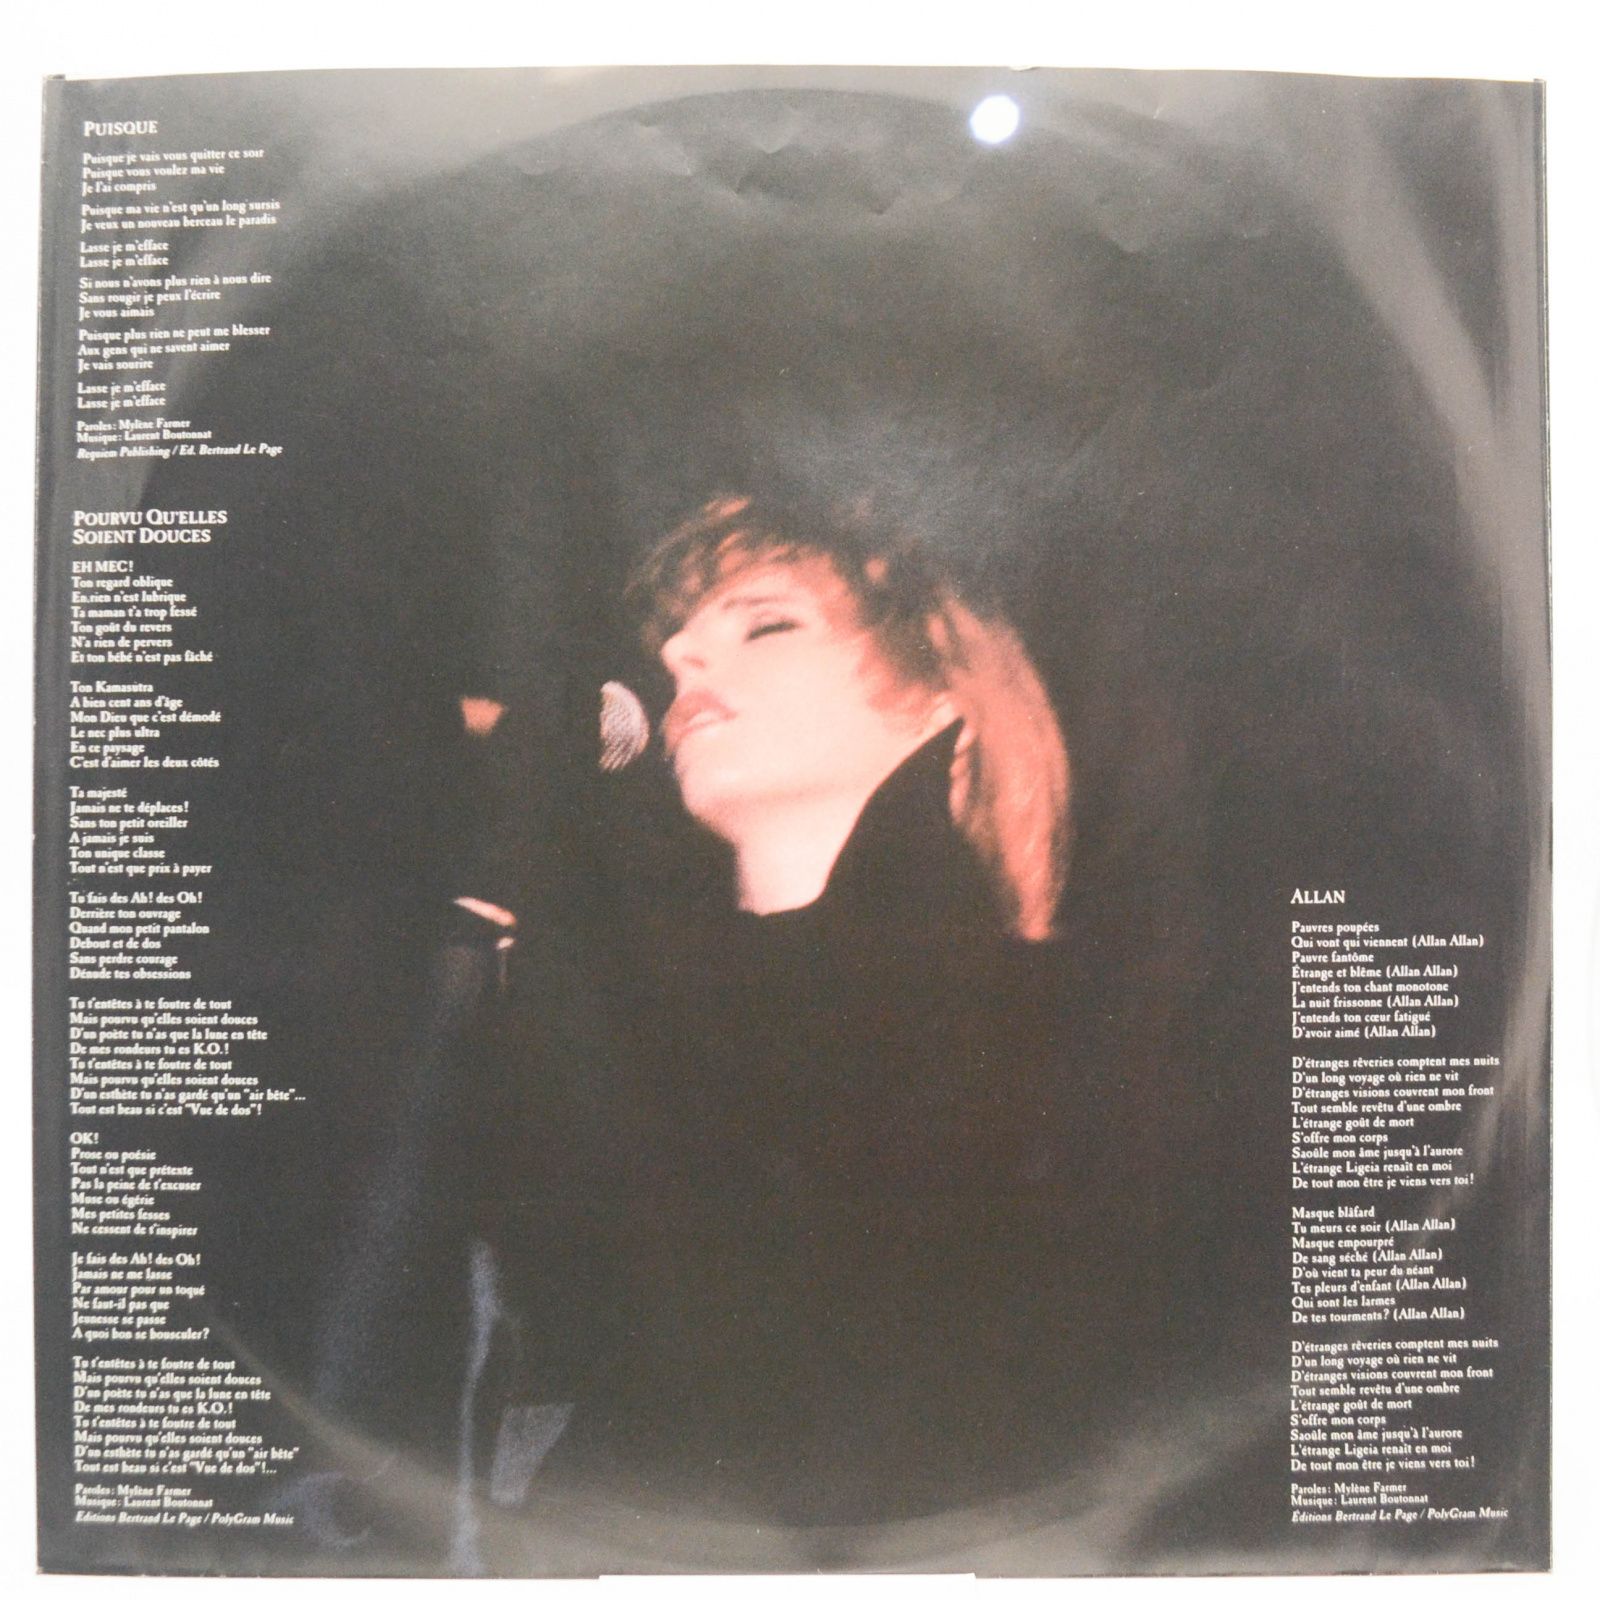 Mylene Farmer — En Concert (2LP, 1-st, France, booklet), 1989